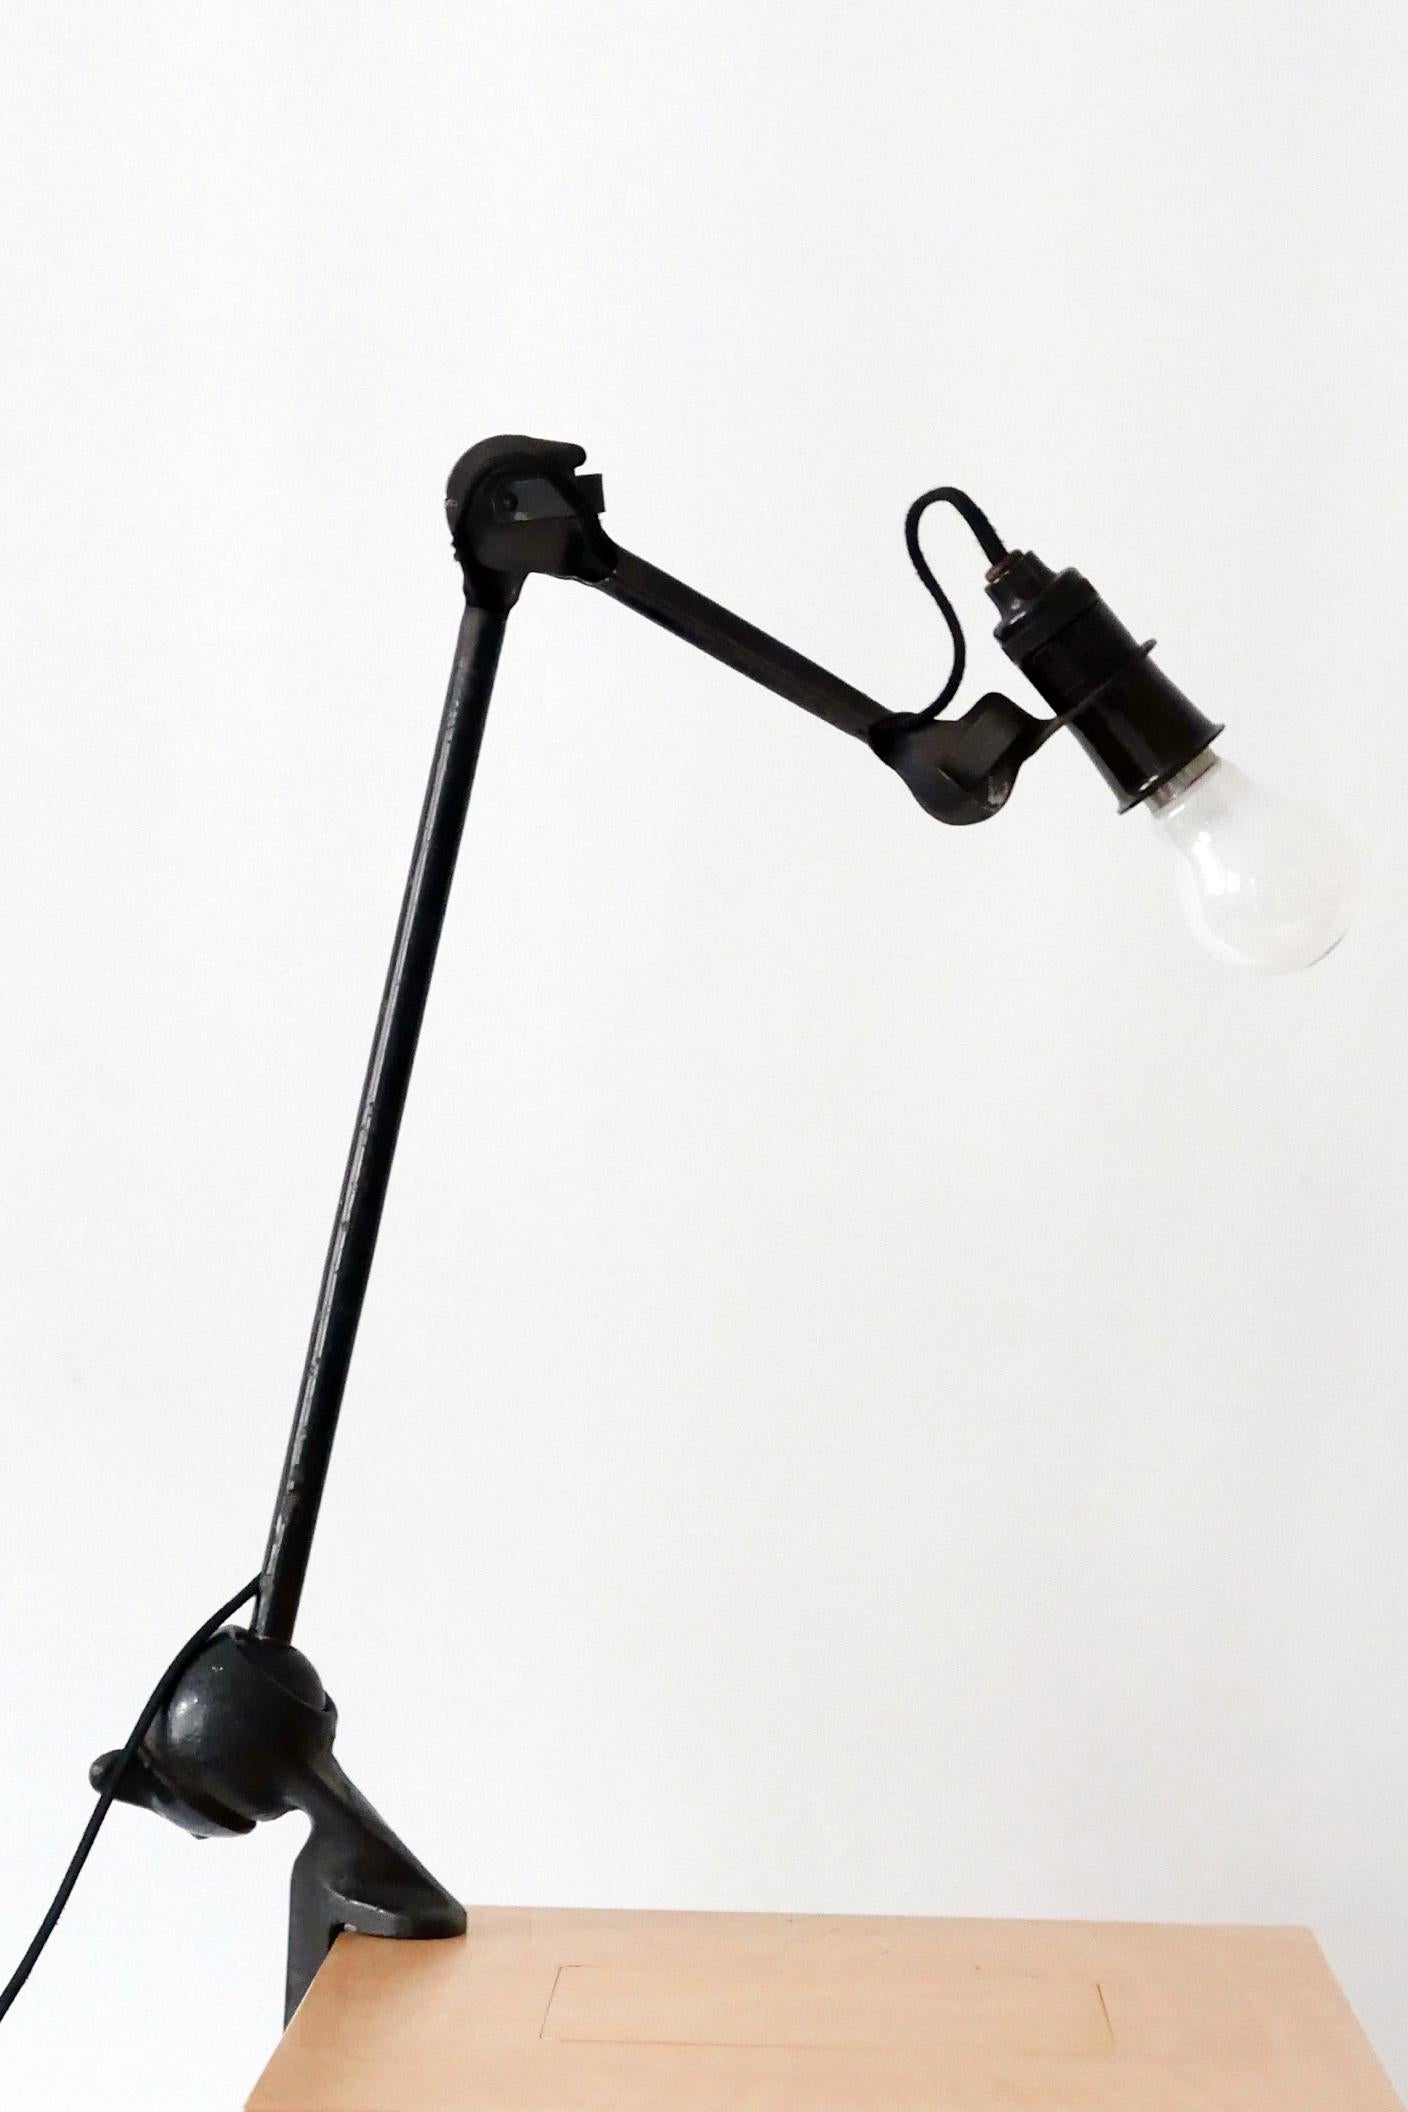 Iron Modernist Task Light or Clamp Table Lamp by Bernard-Albin Gras for Gras, 1920s For Sale